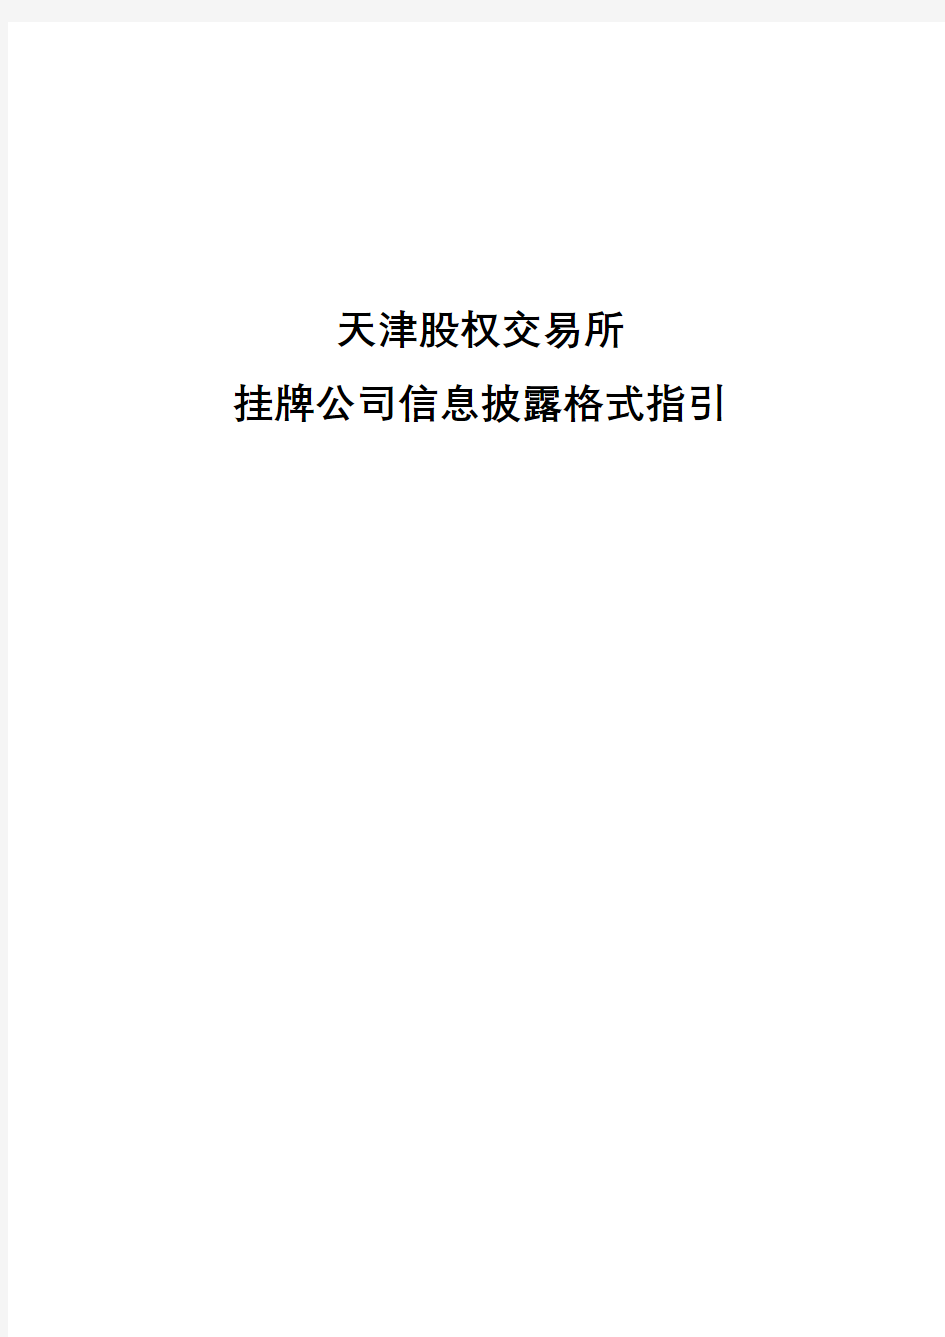 天津股权交易所挂牌公司信息披露格式指引【模板】